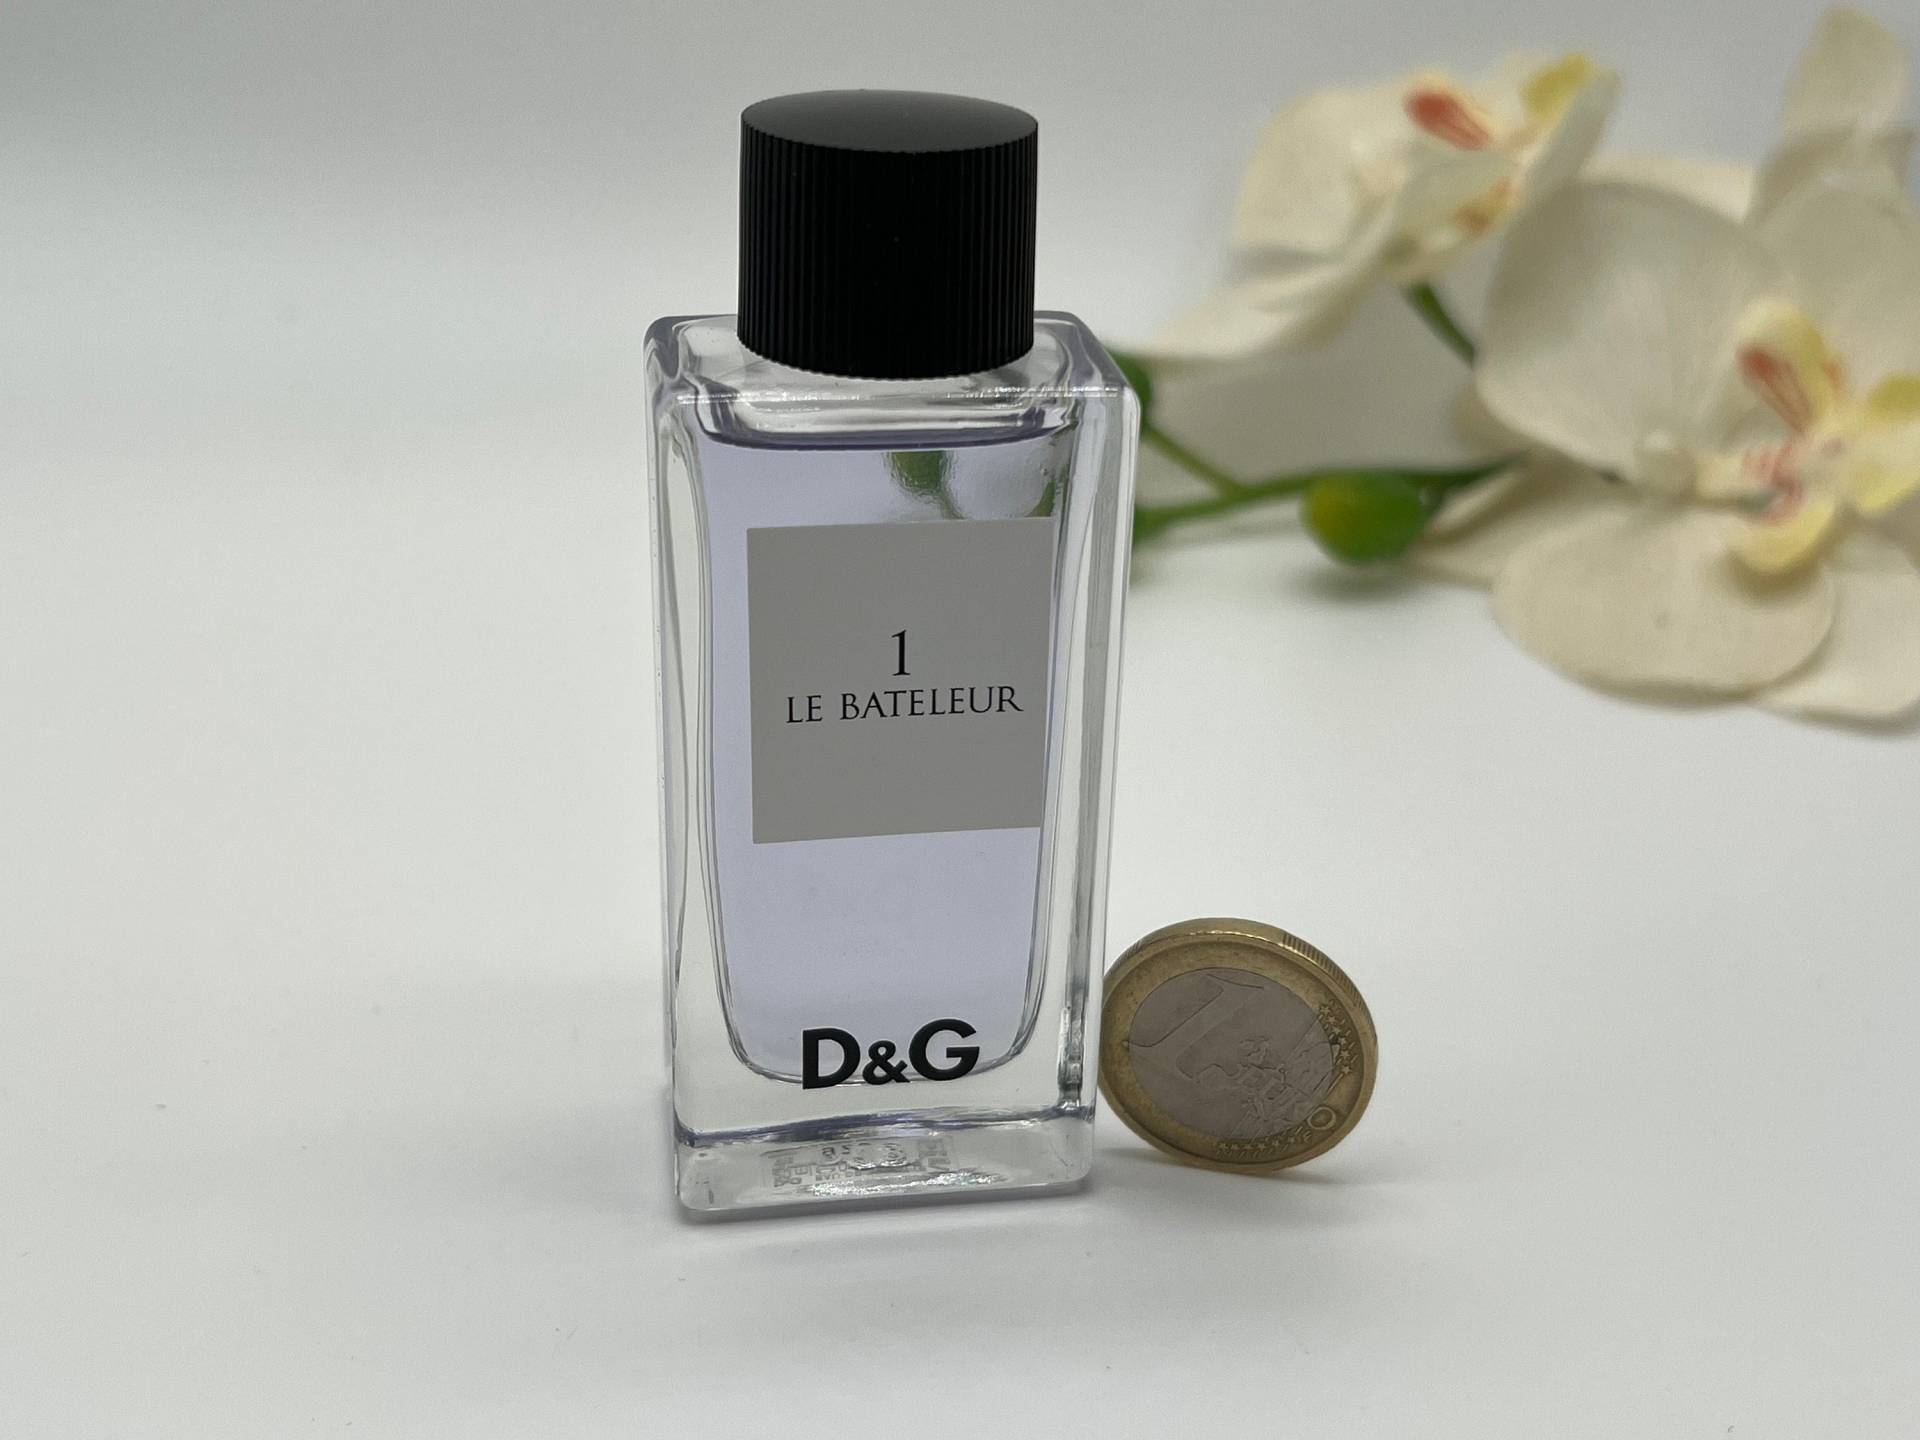 Miniatur Le Bateleur 1 Dolce Gabbana 20 Ml/0, 70 Fl.oz Eau De Toilette Splash No Box Rare Women Es Fragrance Travel Size von VintageItalienstyle